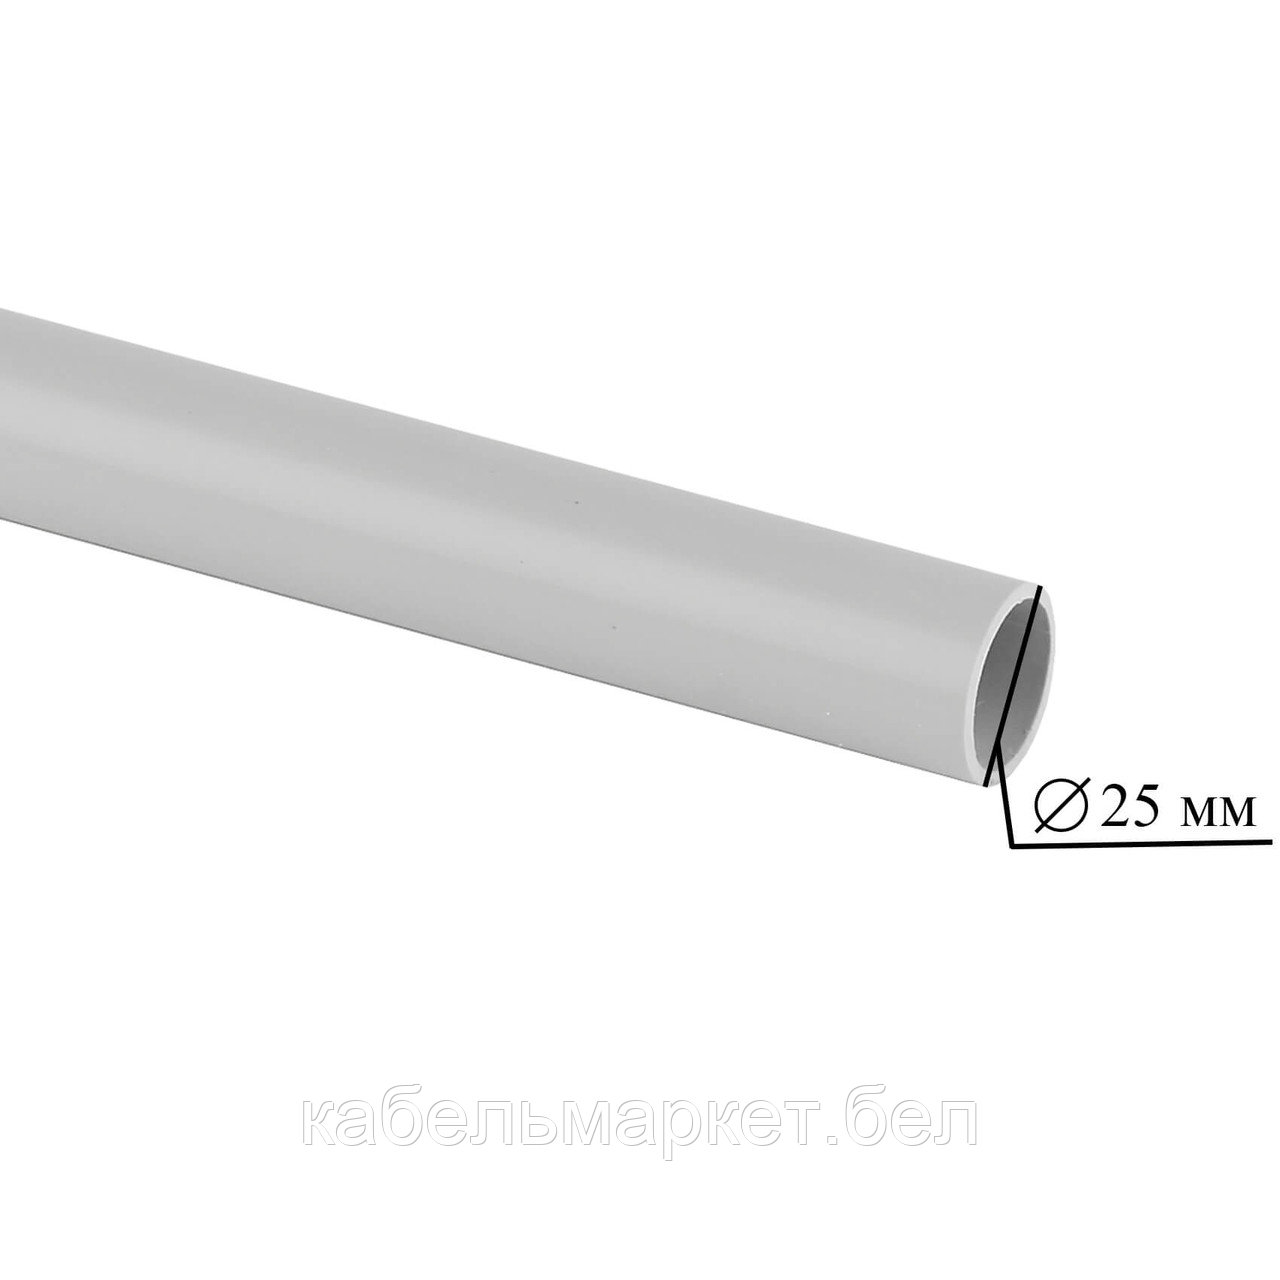 52500 - Труба ПВХ гладкая 25 мм (по 3 метра)